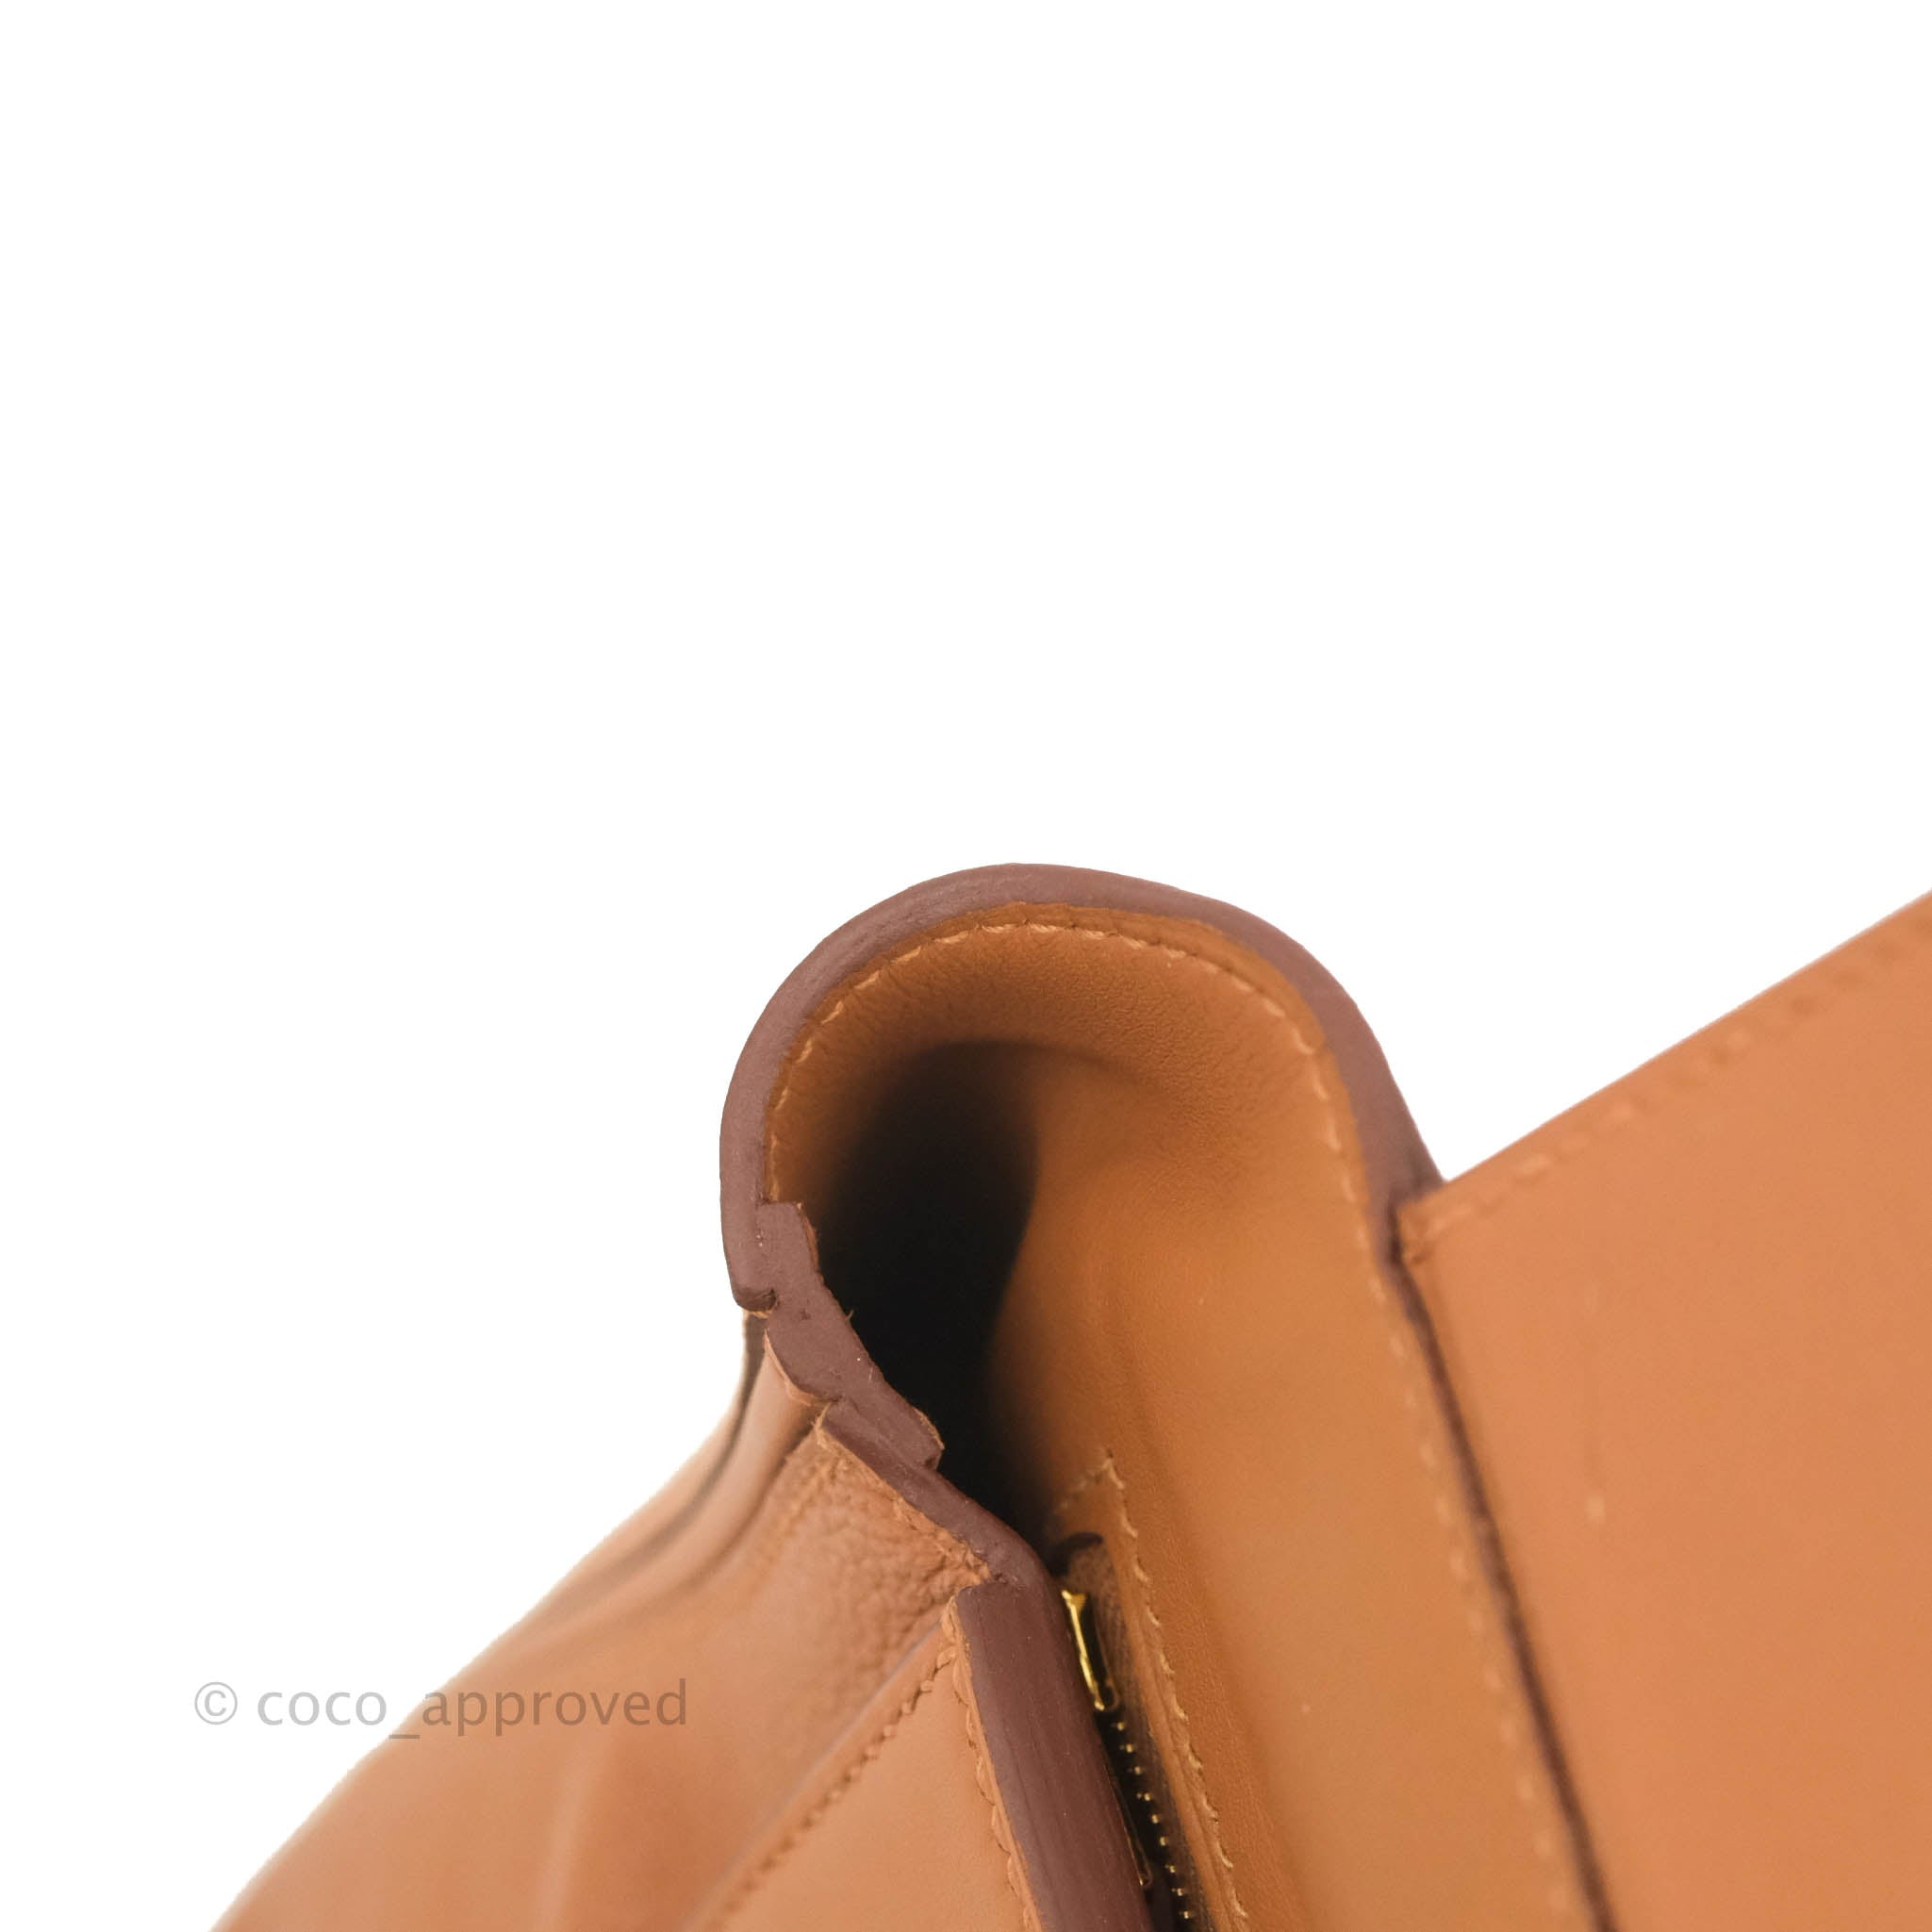 Hermes Vert Bosphore 24/24 Mini Bag – The Closet